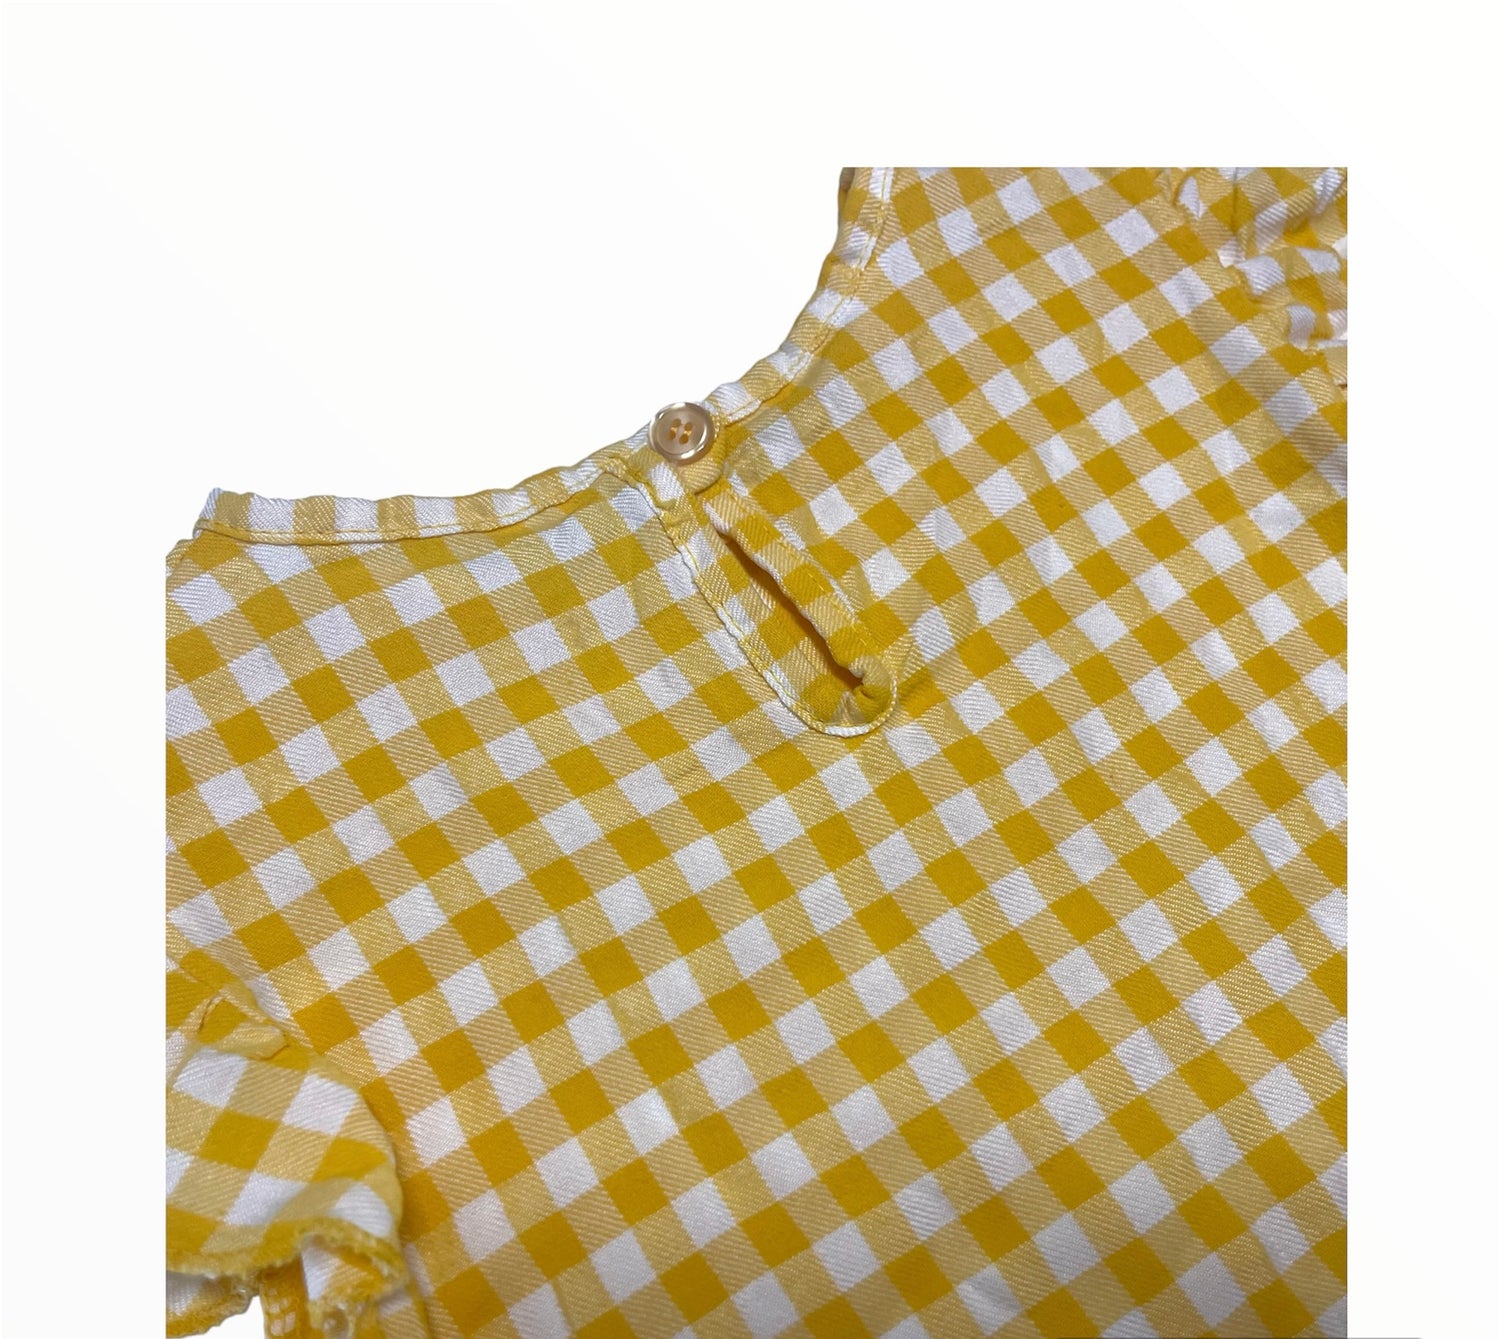 Comprar camiseta vichy.Color amarillo.Abertura trasera. Temporada primavera-verano.